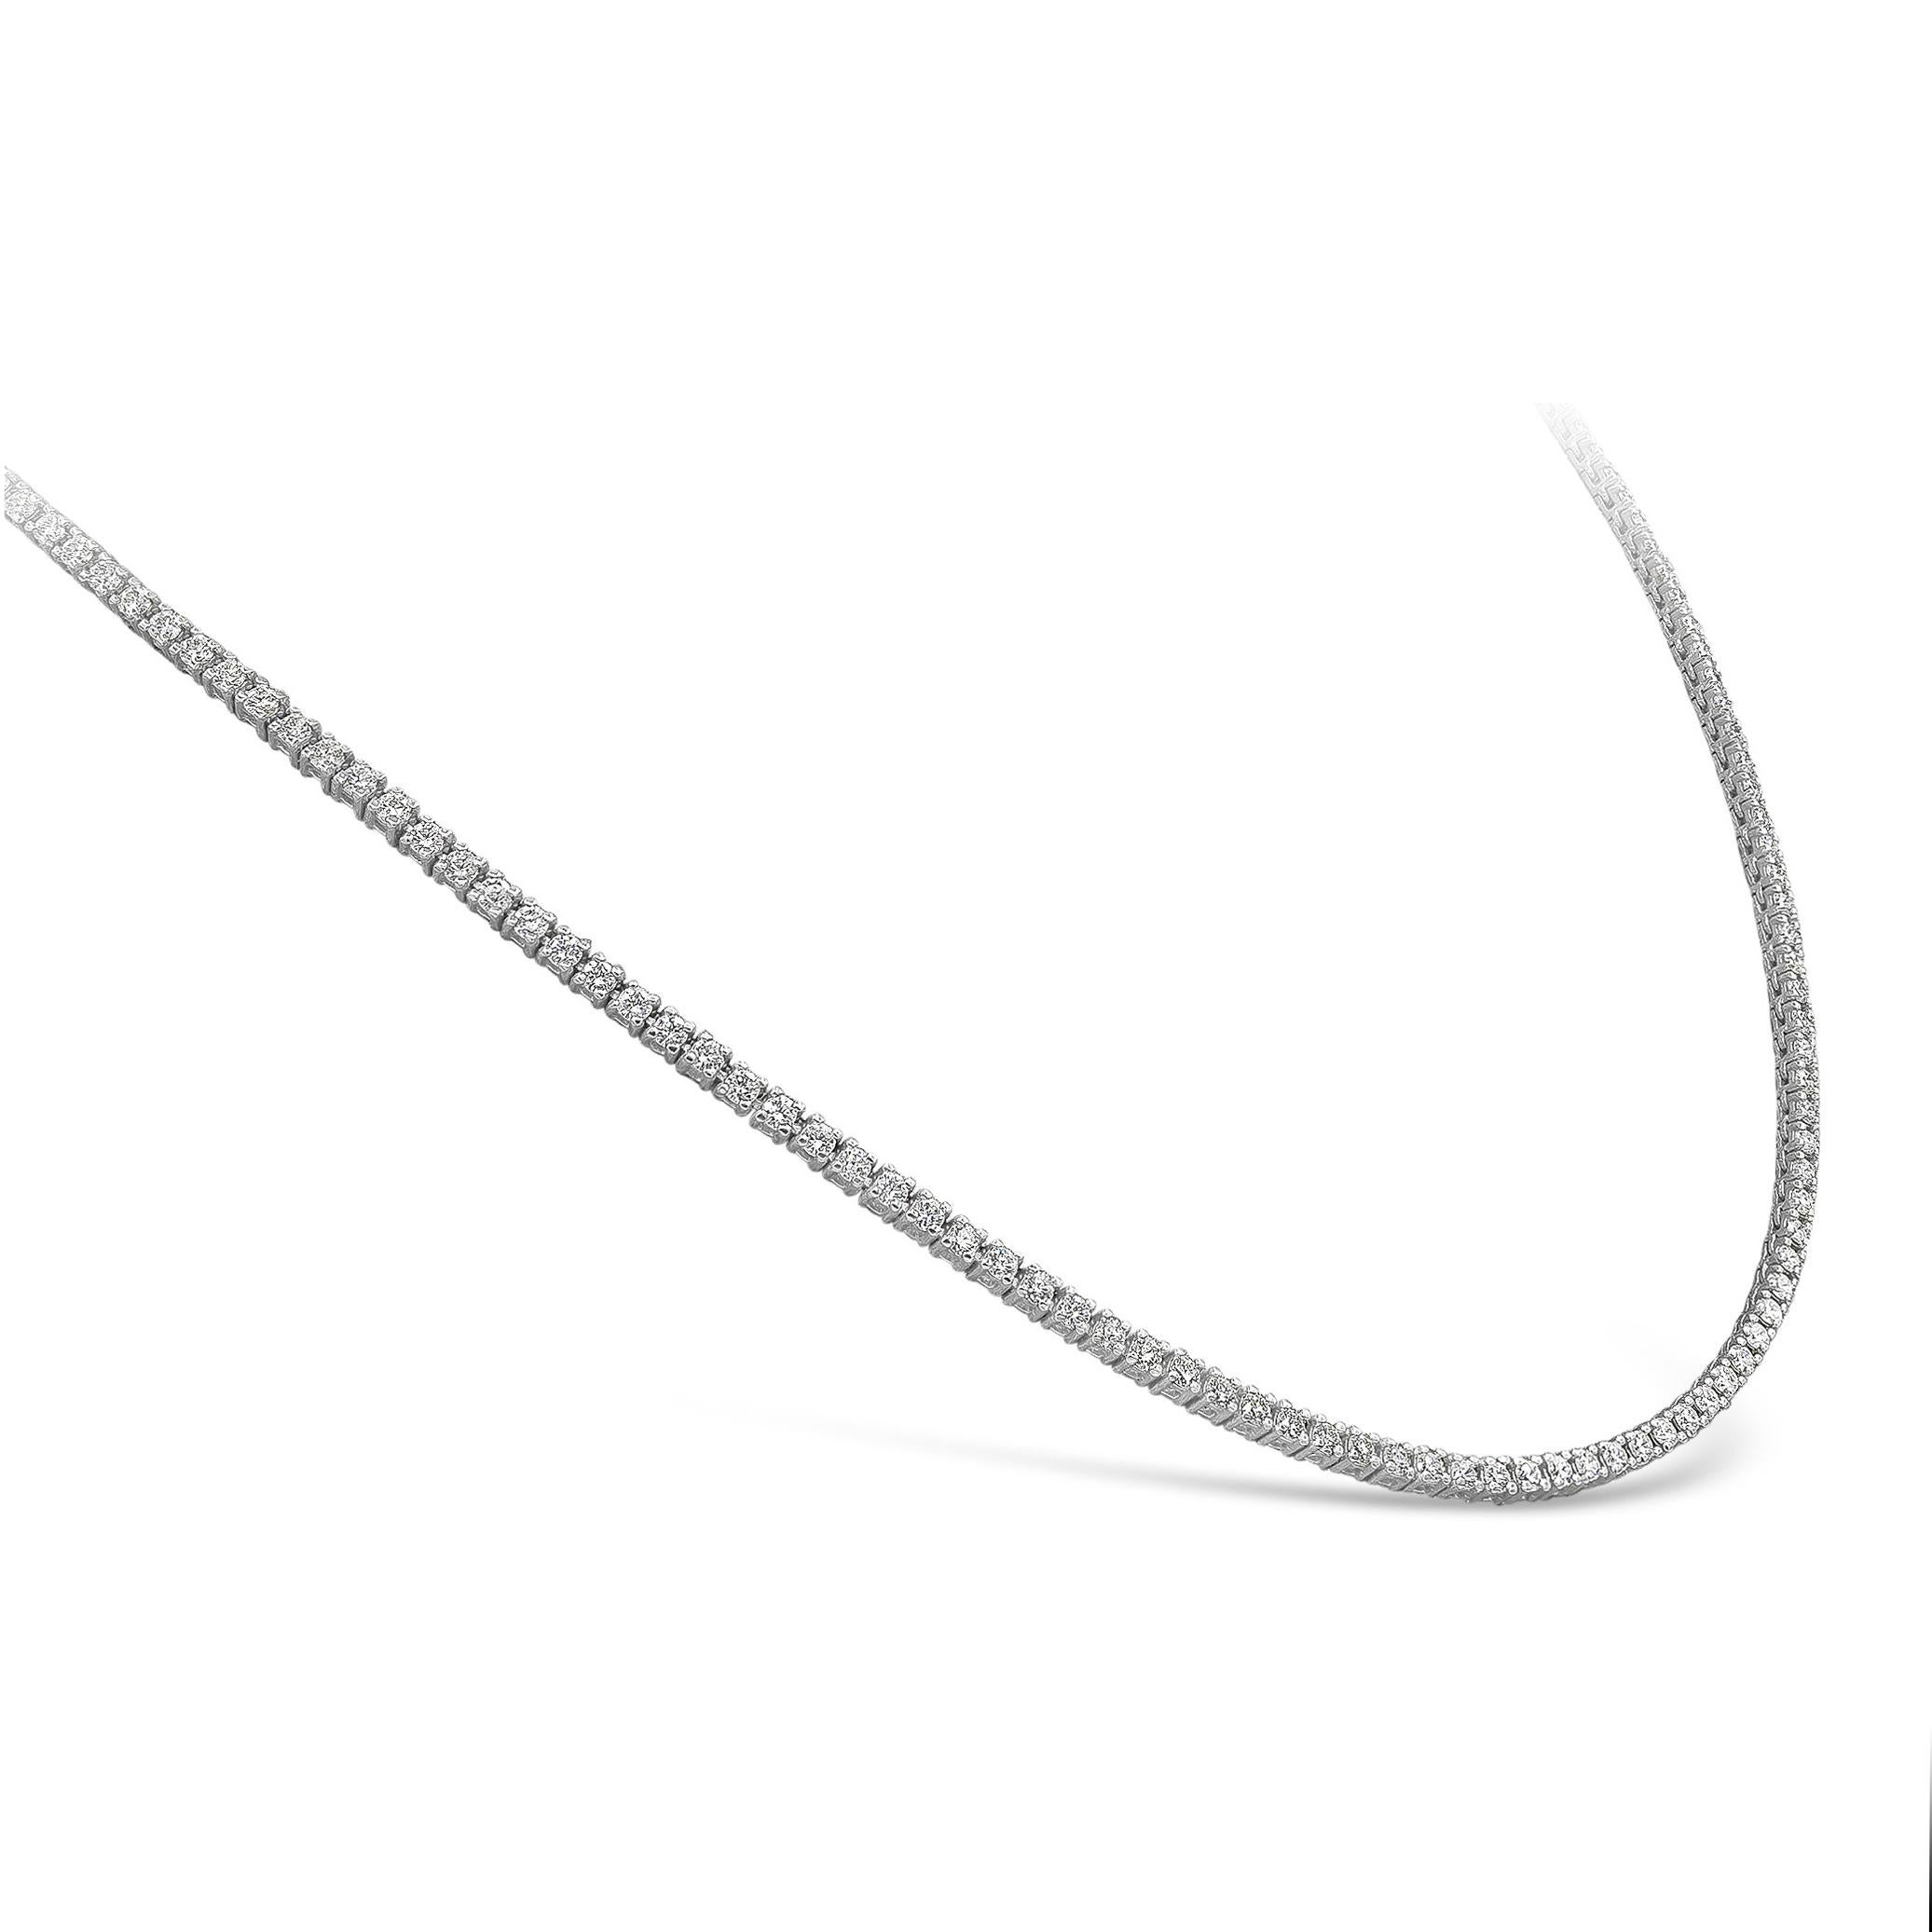 Eine schlichte Tennis-Halskette mit einer Reihe runder Brillanten mit einem Gesamtgewicht von 2,62 Karat, gefasst in einer polierten Fassung aus 14 Karat Weißgold. 

Stil in verschiedenen Preisklassen erhältlich. Die Preise richten sich nach Ihrer